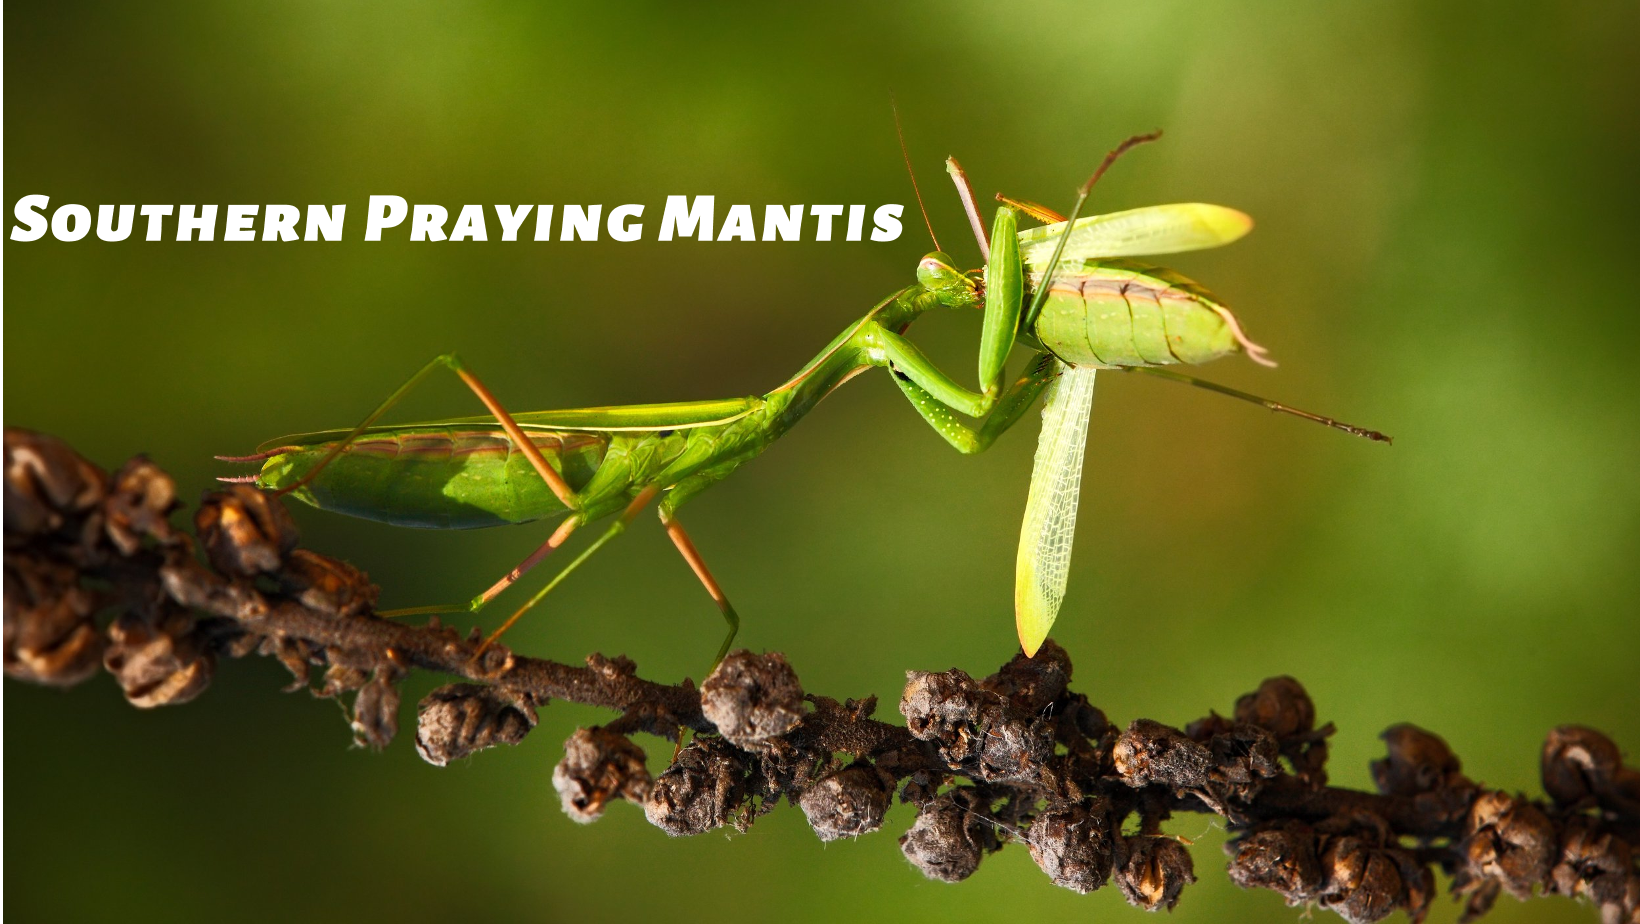 Southern Praying Mantis - 南派螳螂 - Nam Pai Tong Long